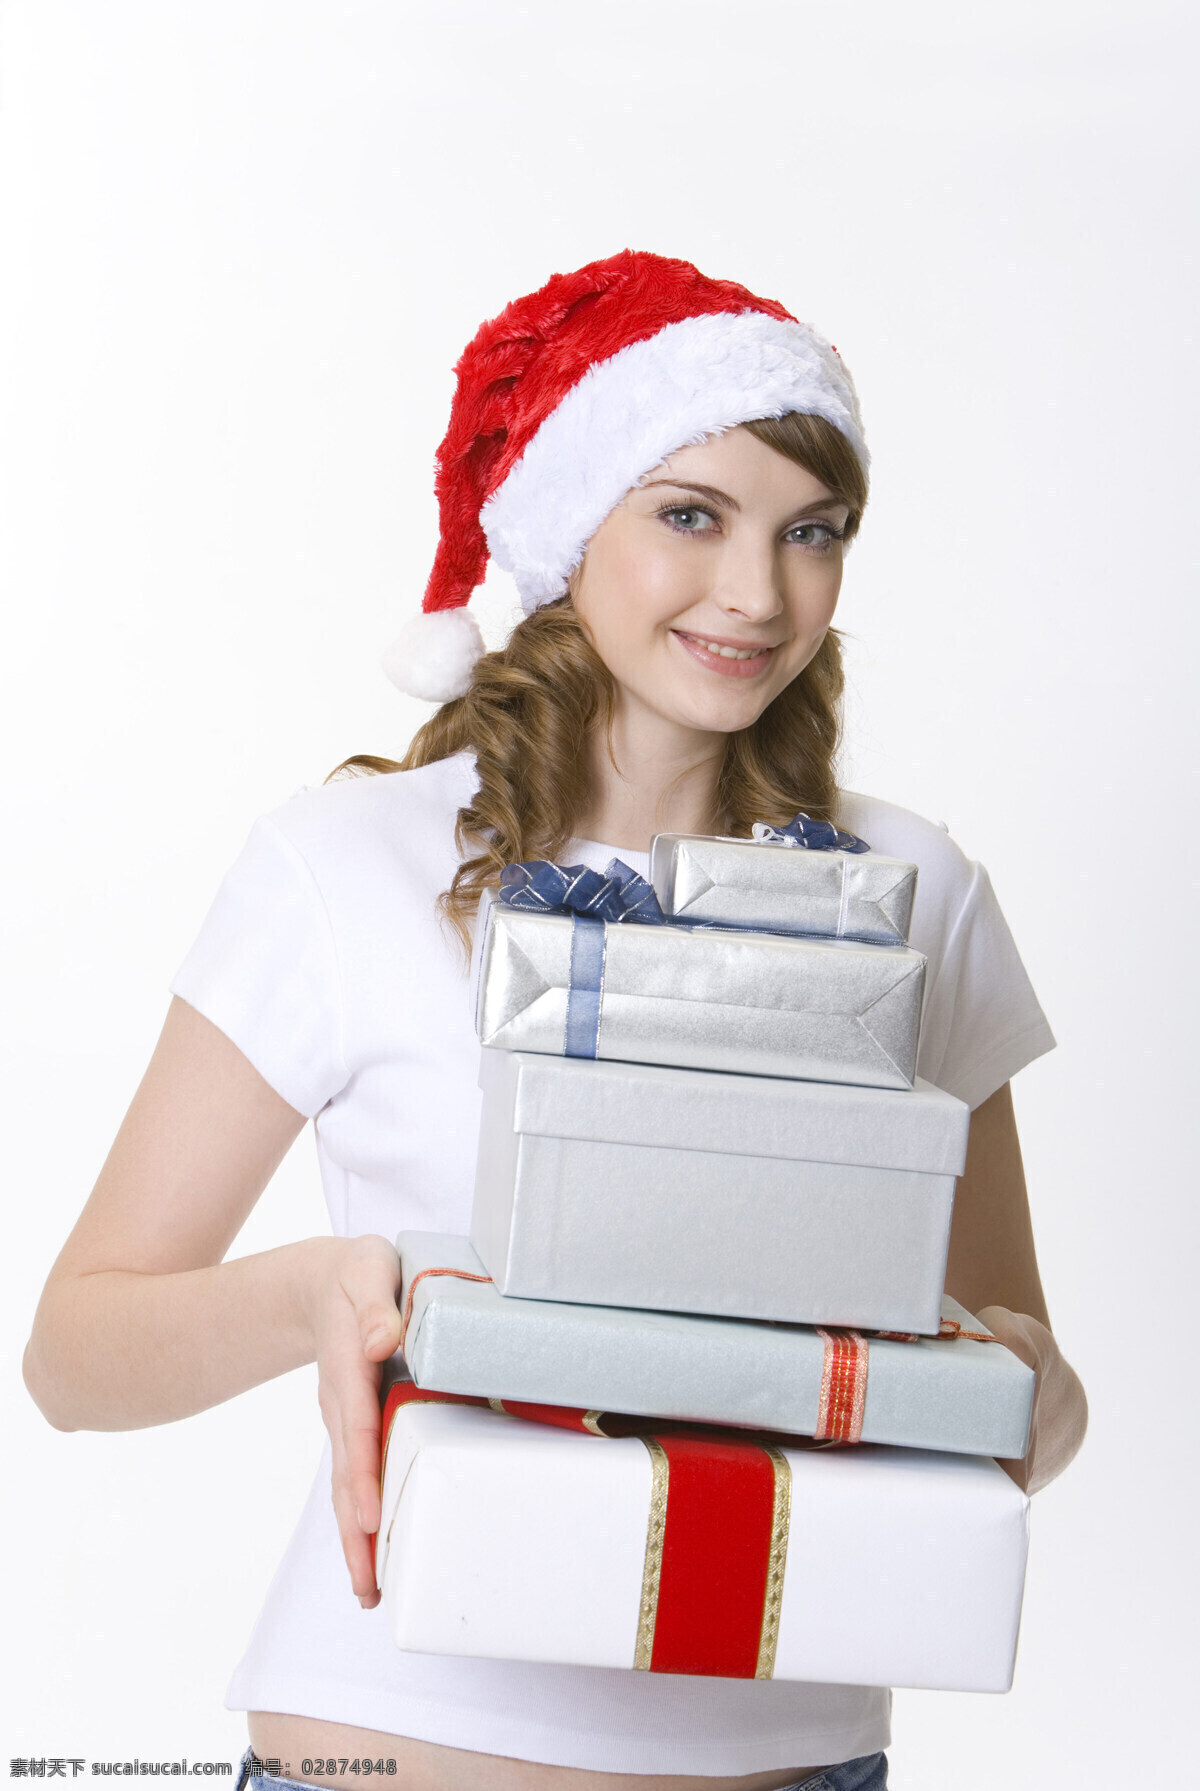 抱 圣诞 礼物 时尚 美女图片 女人 美女 外国女性 时尚美女 帽子 购物女性 圣诞节 盒子 礼包 礼品 抱着 微笑 笑容 高清图片 人物图片